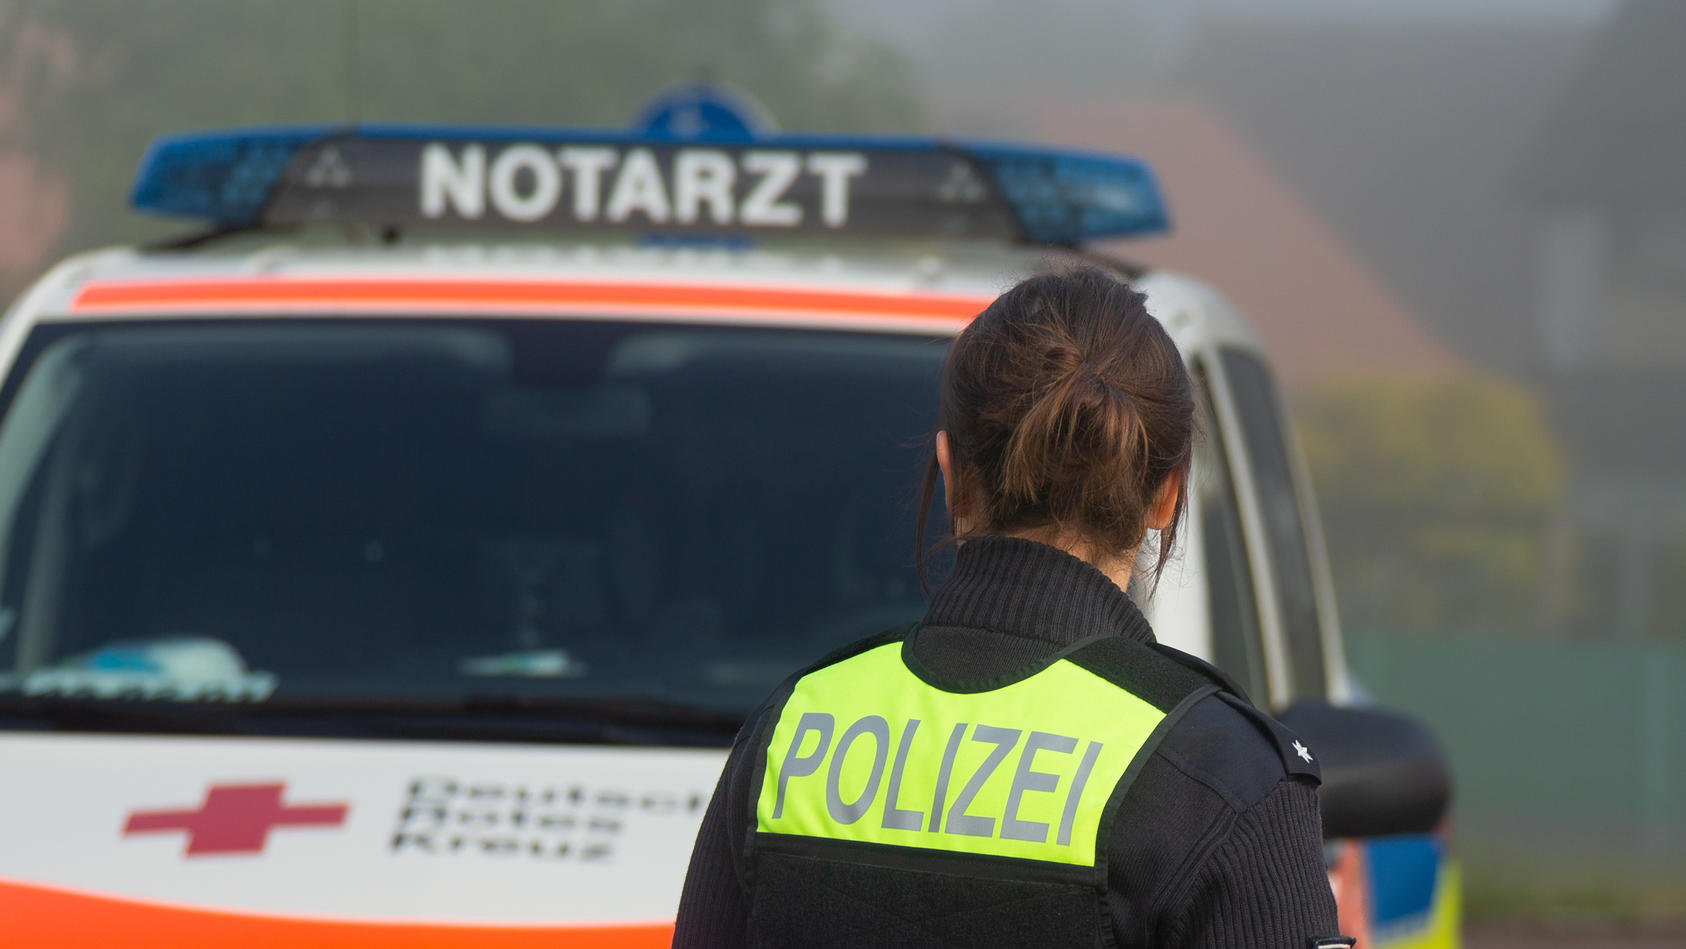 Furchtbarer Unfall in Bayern - Getränkelaster fährt auf Schulgelände - Mädchen (11) tot